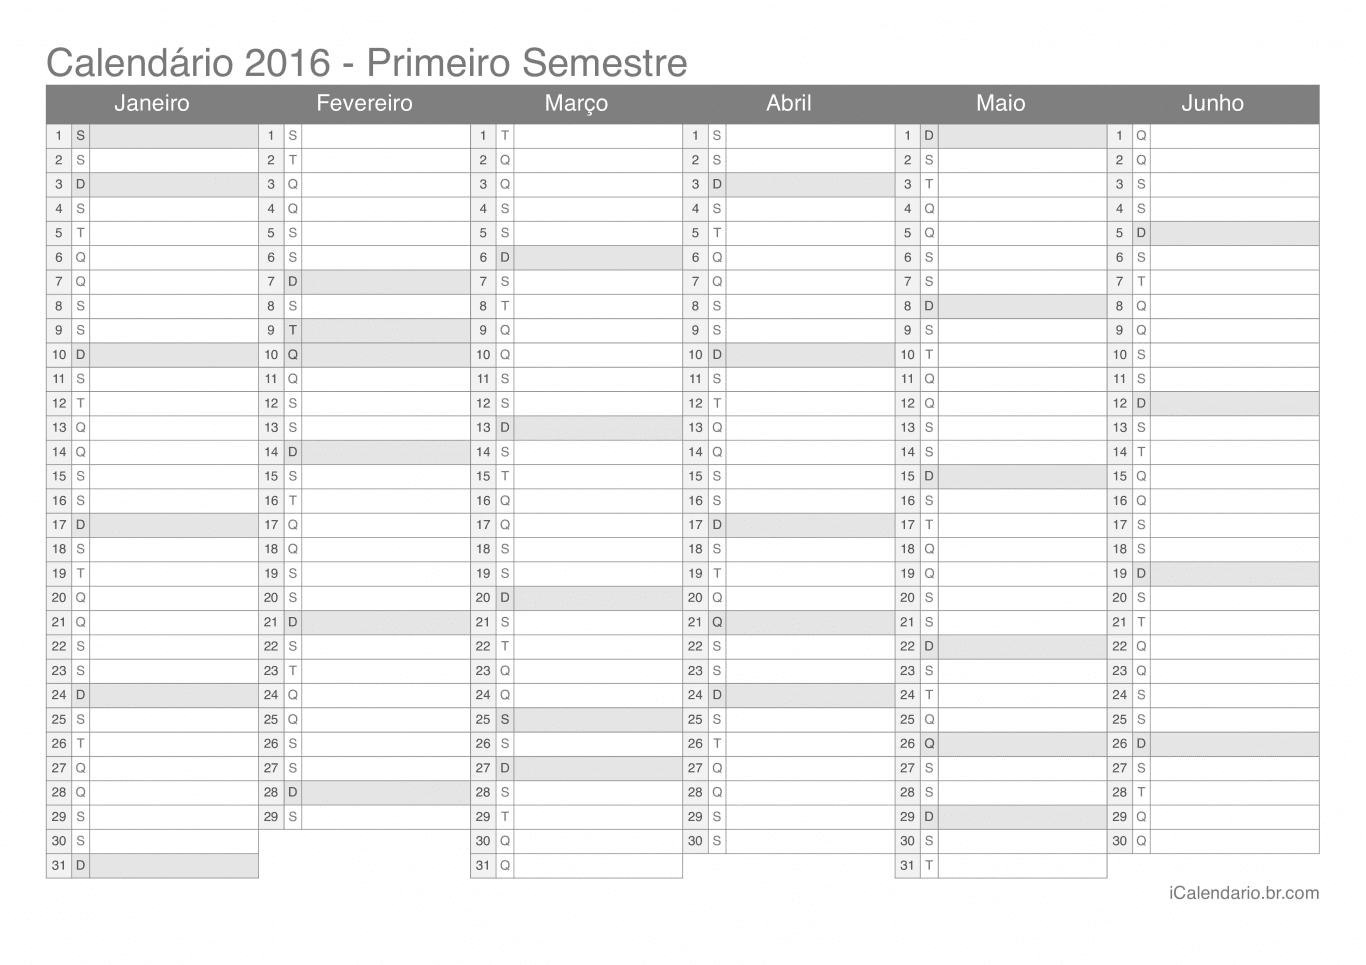 Calendário por semestre 2016